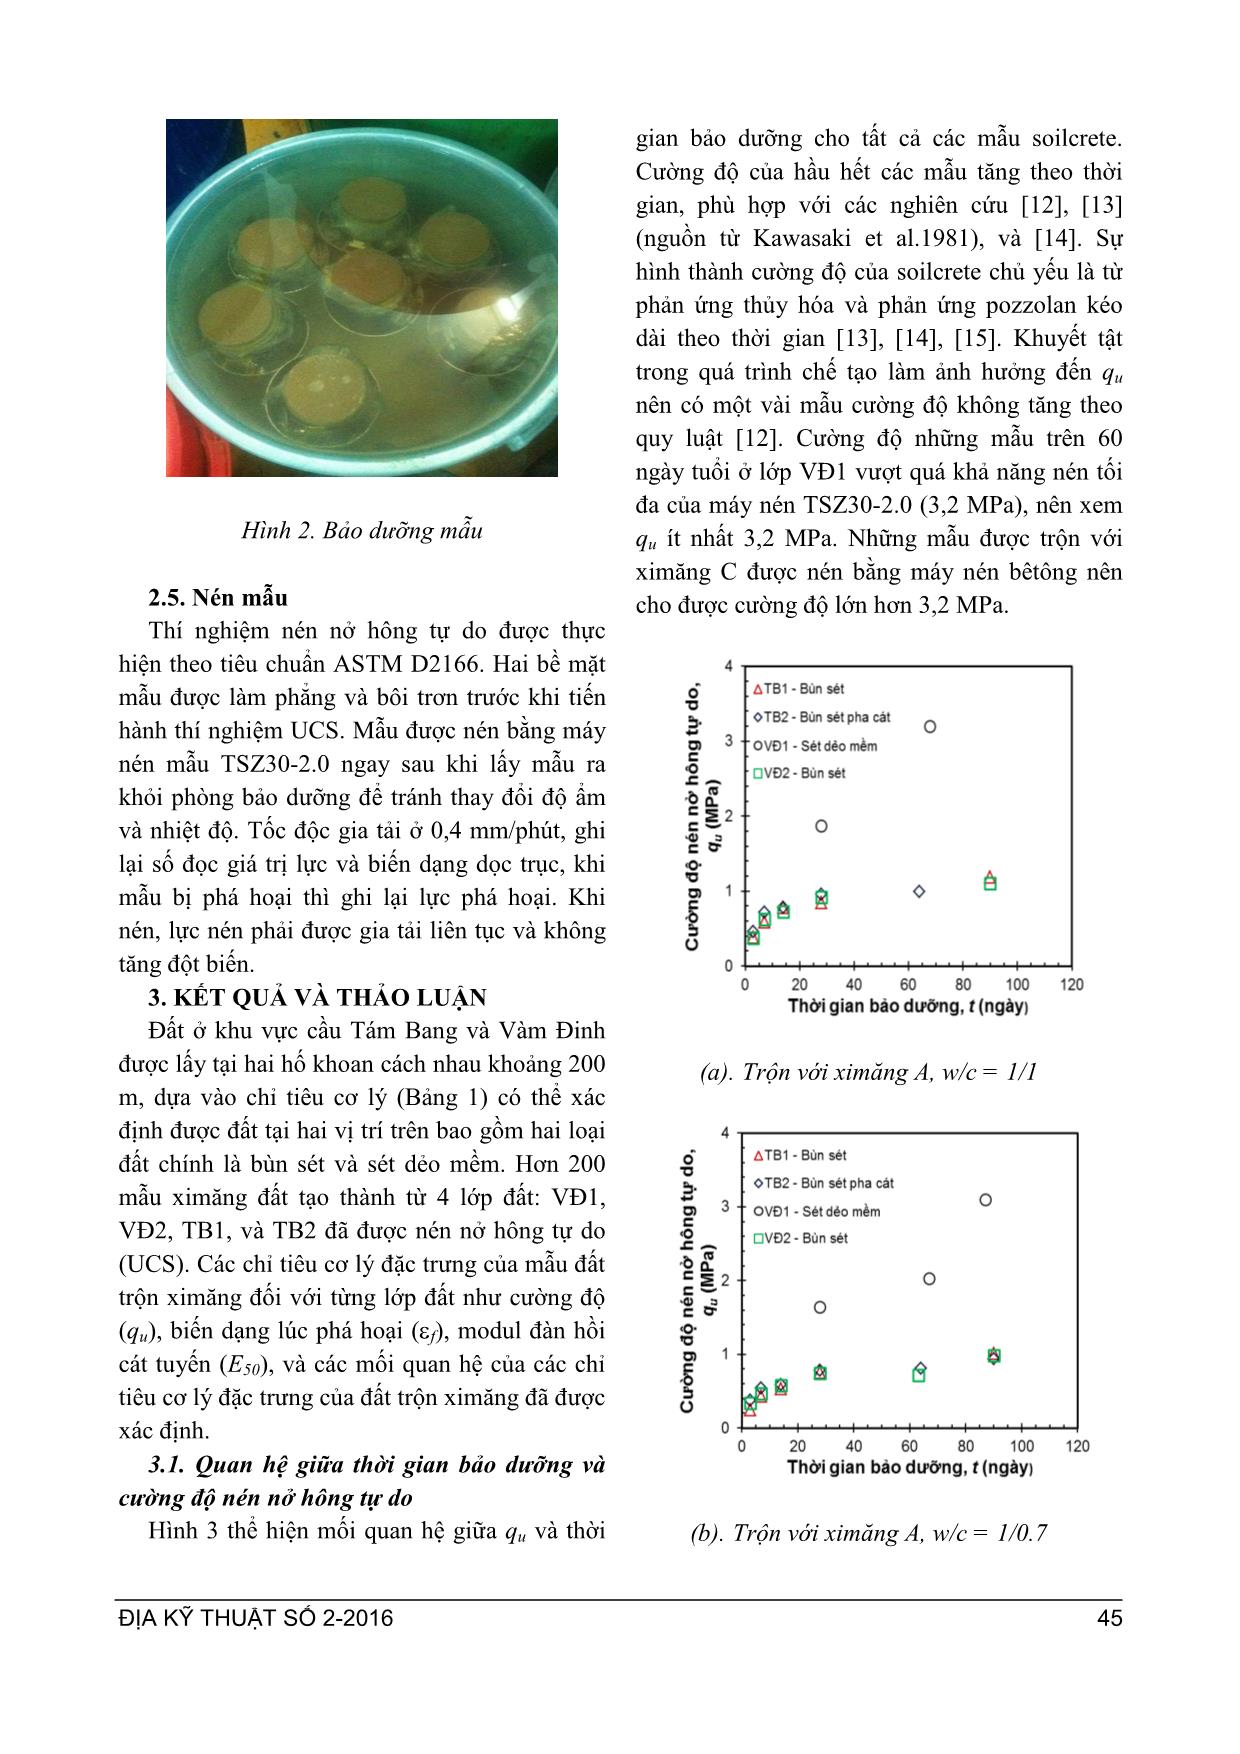 Ứng xử soilcrete trong phõng tạo ra từ đất ở cầu tám bang và vàm đinh mô phỏng công nghệ Jet Grouting trang 4